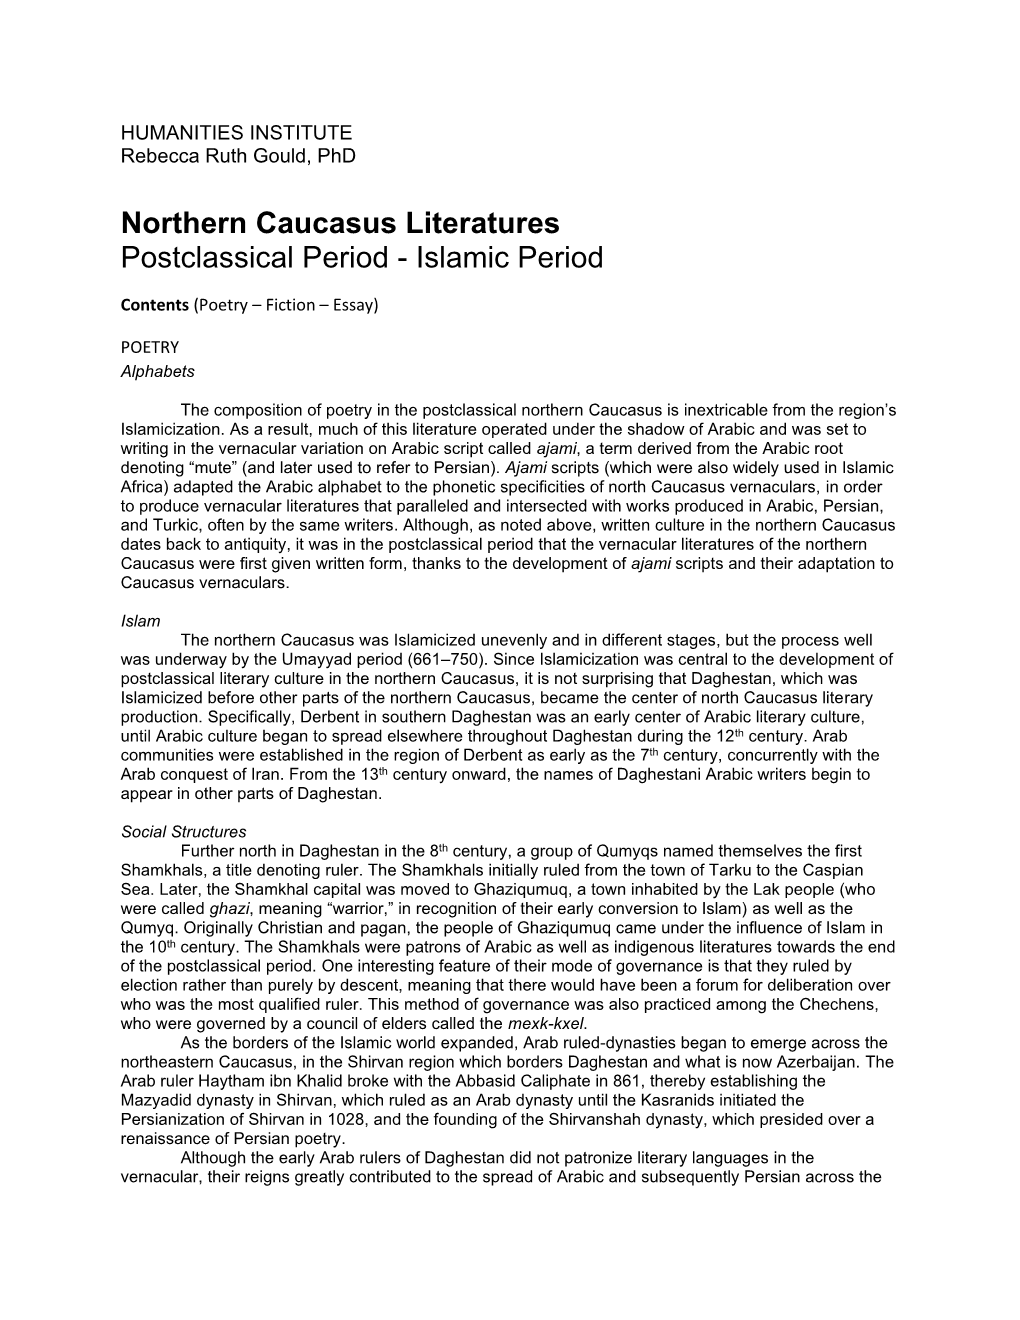 Northern Caucasus Literatures Postclassical Period - Islamic Period